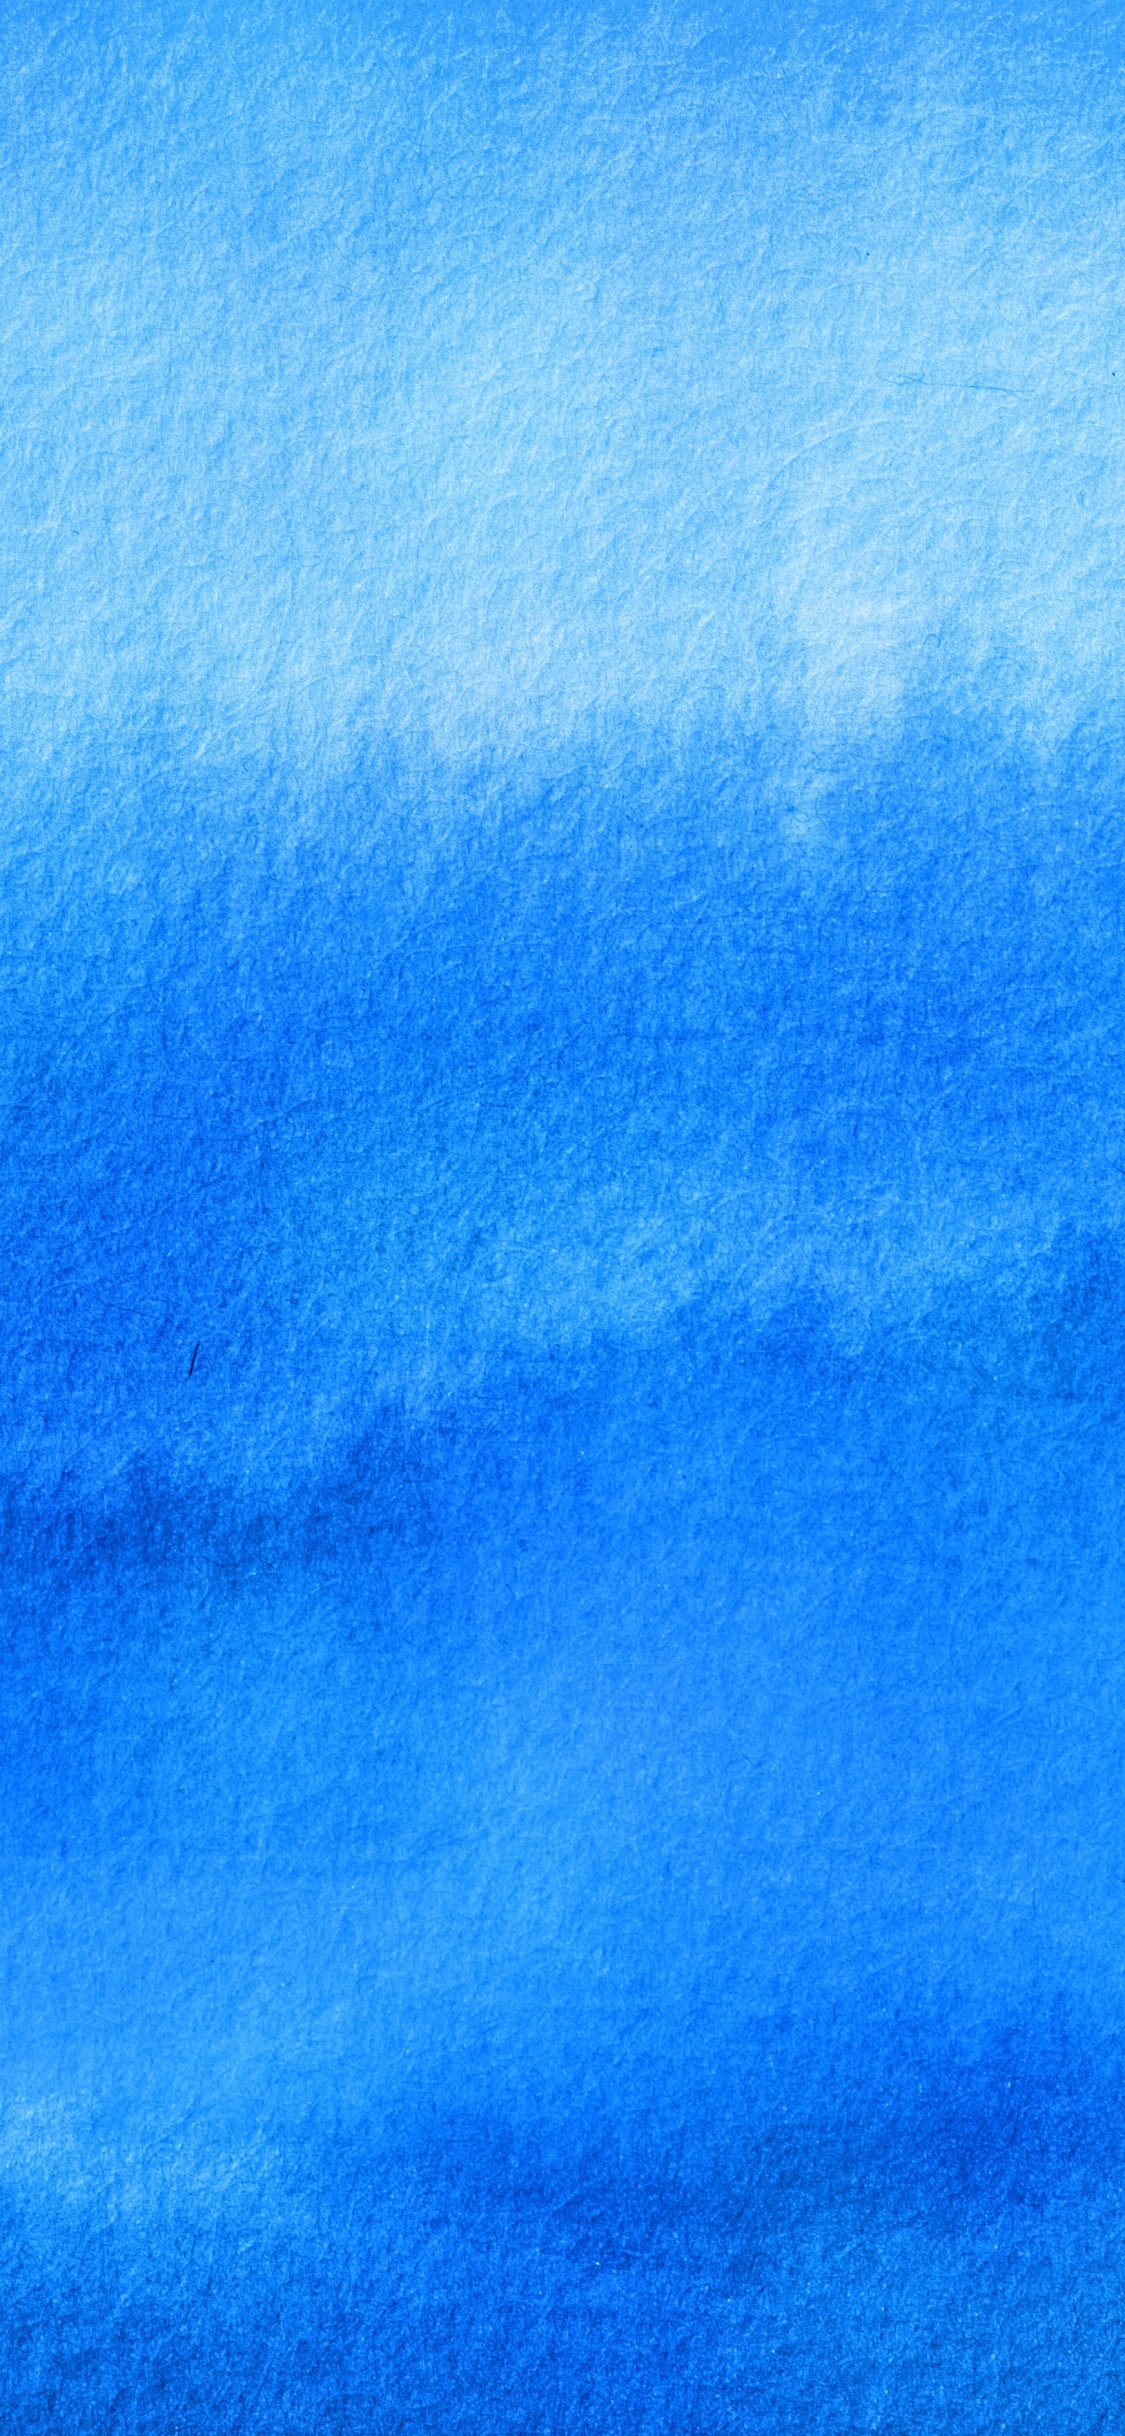 Nuages Bleus et Blancs Pendant la Journée. Wallpaper in 1125x2436 Resolution